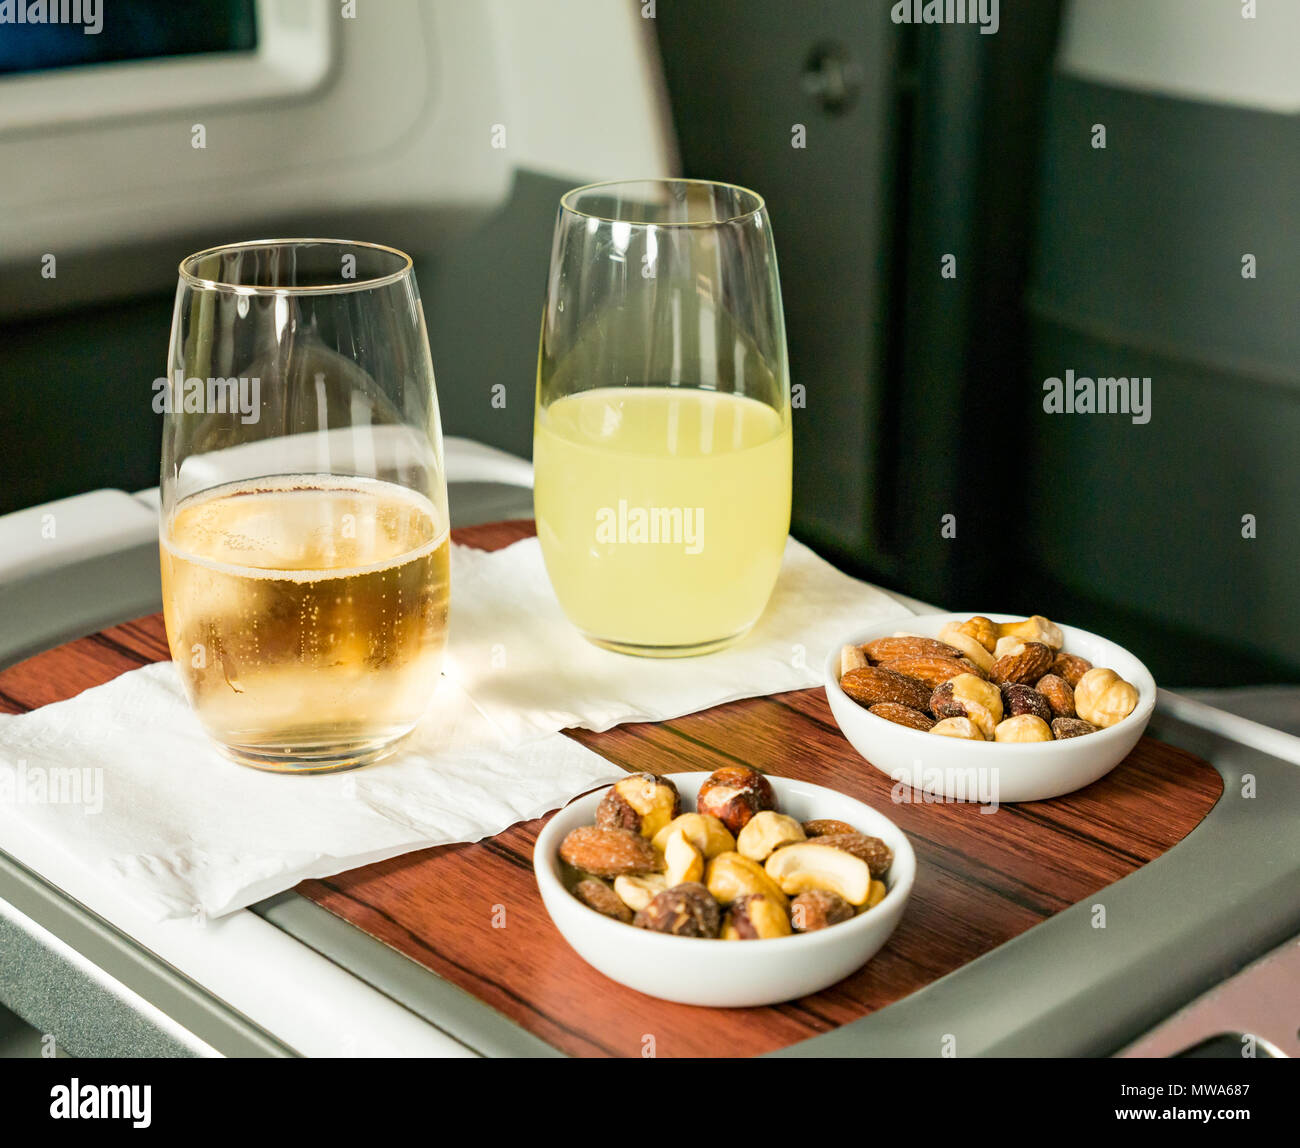 Los asientos de clase Business LATAM Airlines Boeing 787 Dreamliner 787 volando desde la Isla de Pascua a Santiago; pisco sour y vino espumoso bebidas de bienvenida con mezcla de frutos secos Foto de stock